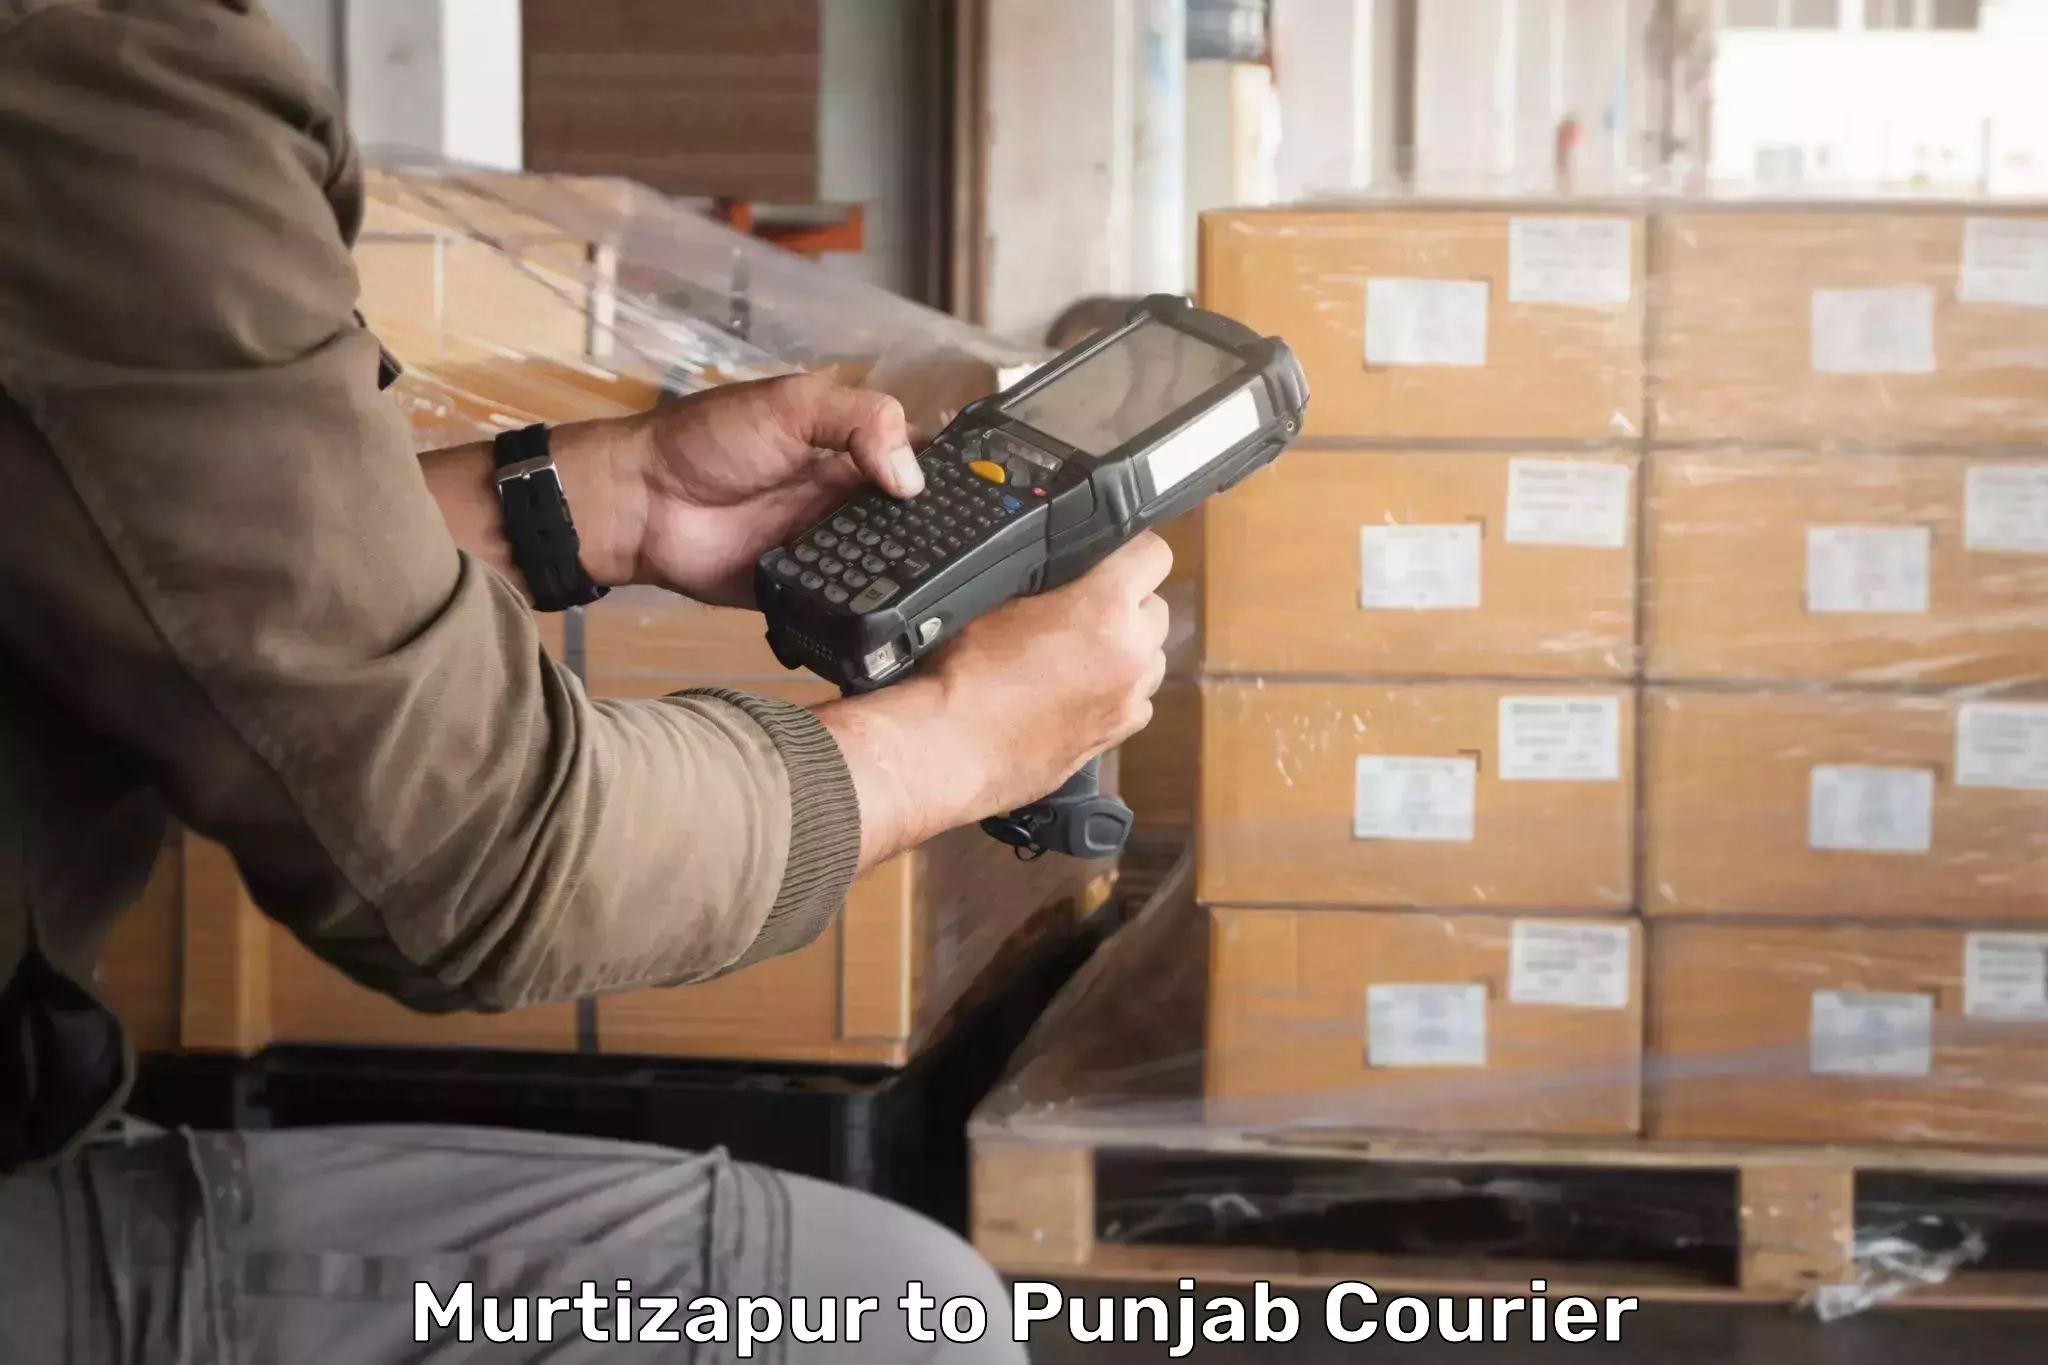 Efficient parcel service Murtizapur to Raikot